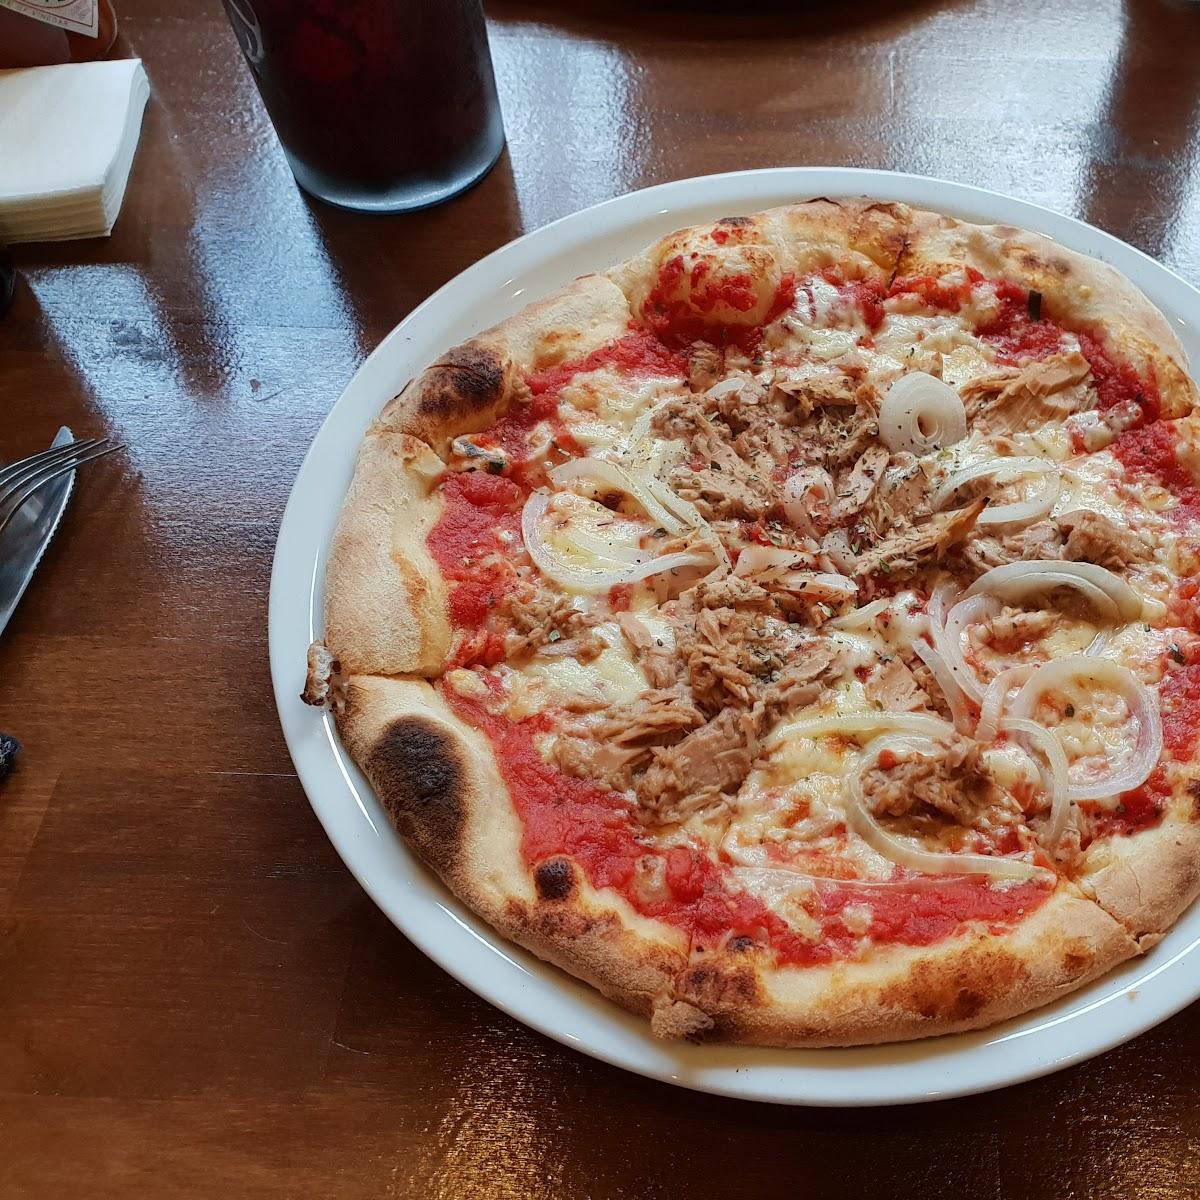 Restaurant "Pizzeria Paradiso" in Mannheim